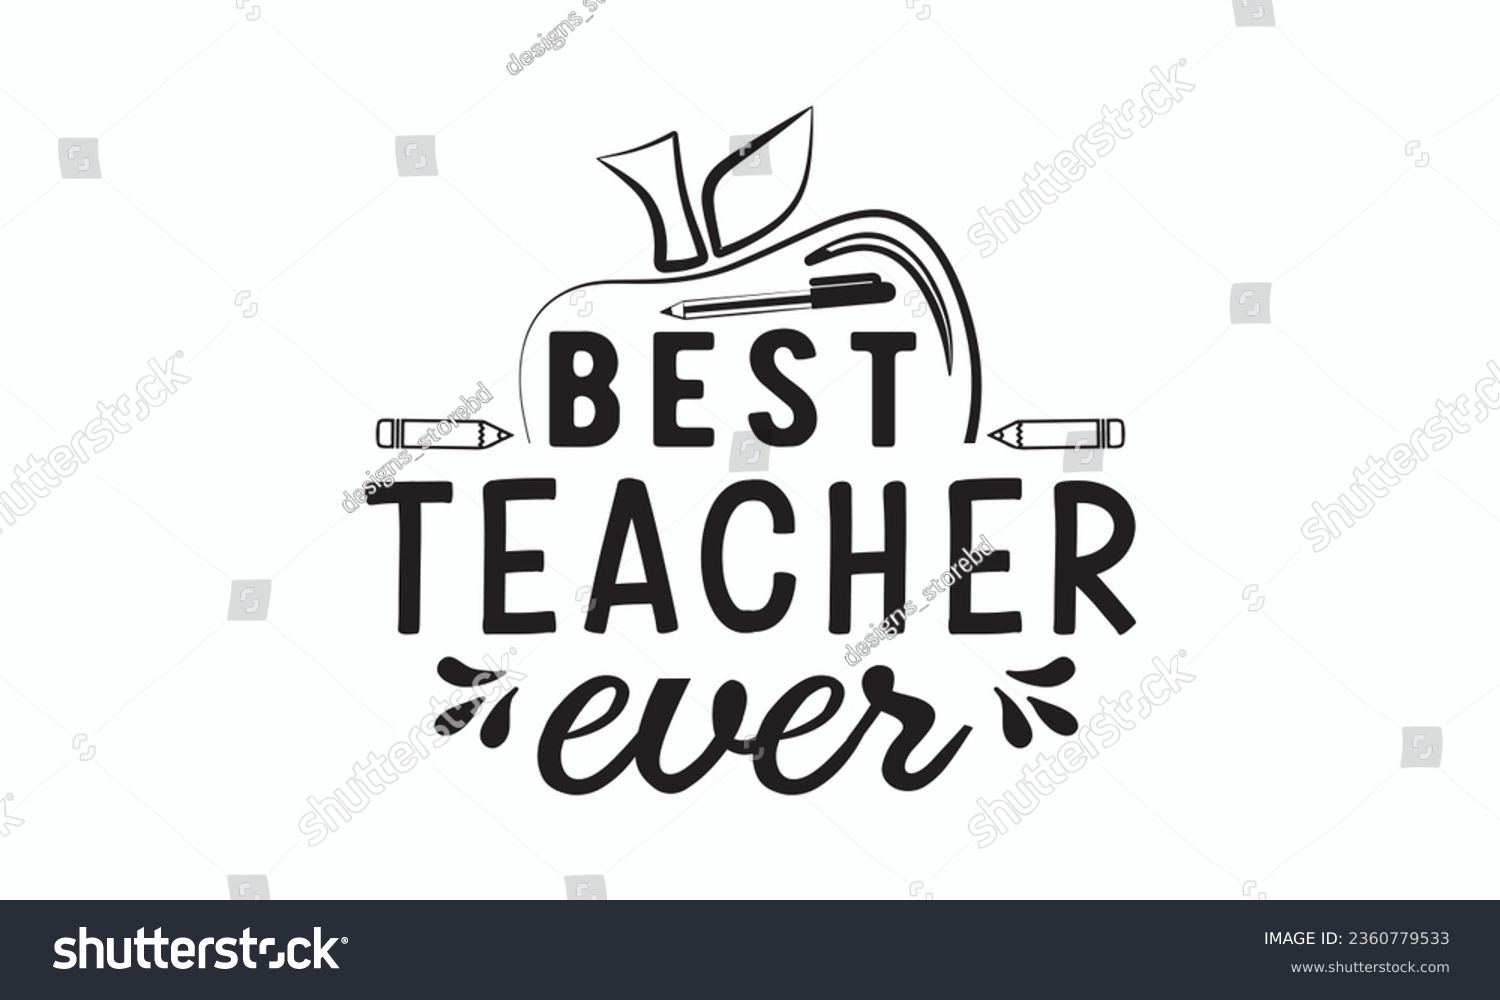 SVG of Best teacher ever svg, Teacher SVG, Teacher T-shirt, Teacher Quotes T-shirt bundle, Back To School svg, Hello School Shirt, School Shirt for Kids, Silhouette, Cricut Cut Files svg